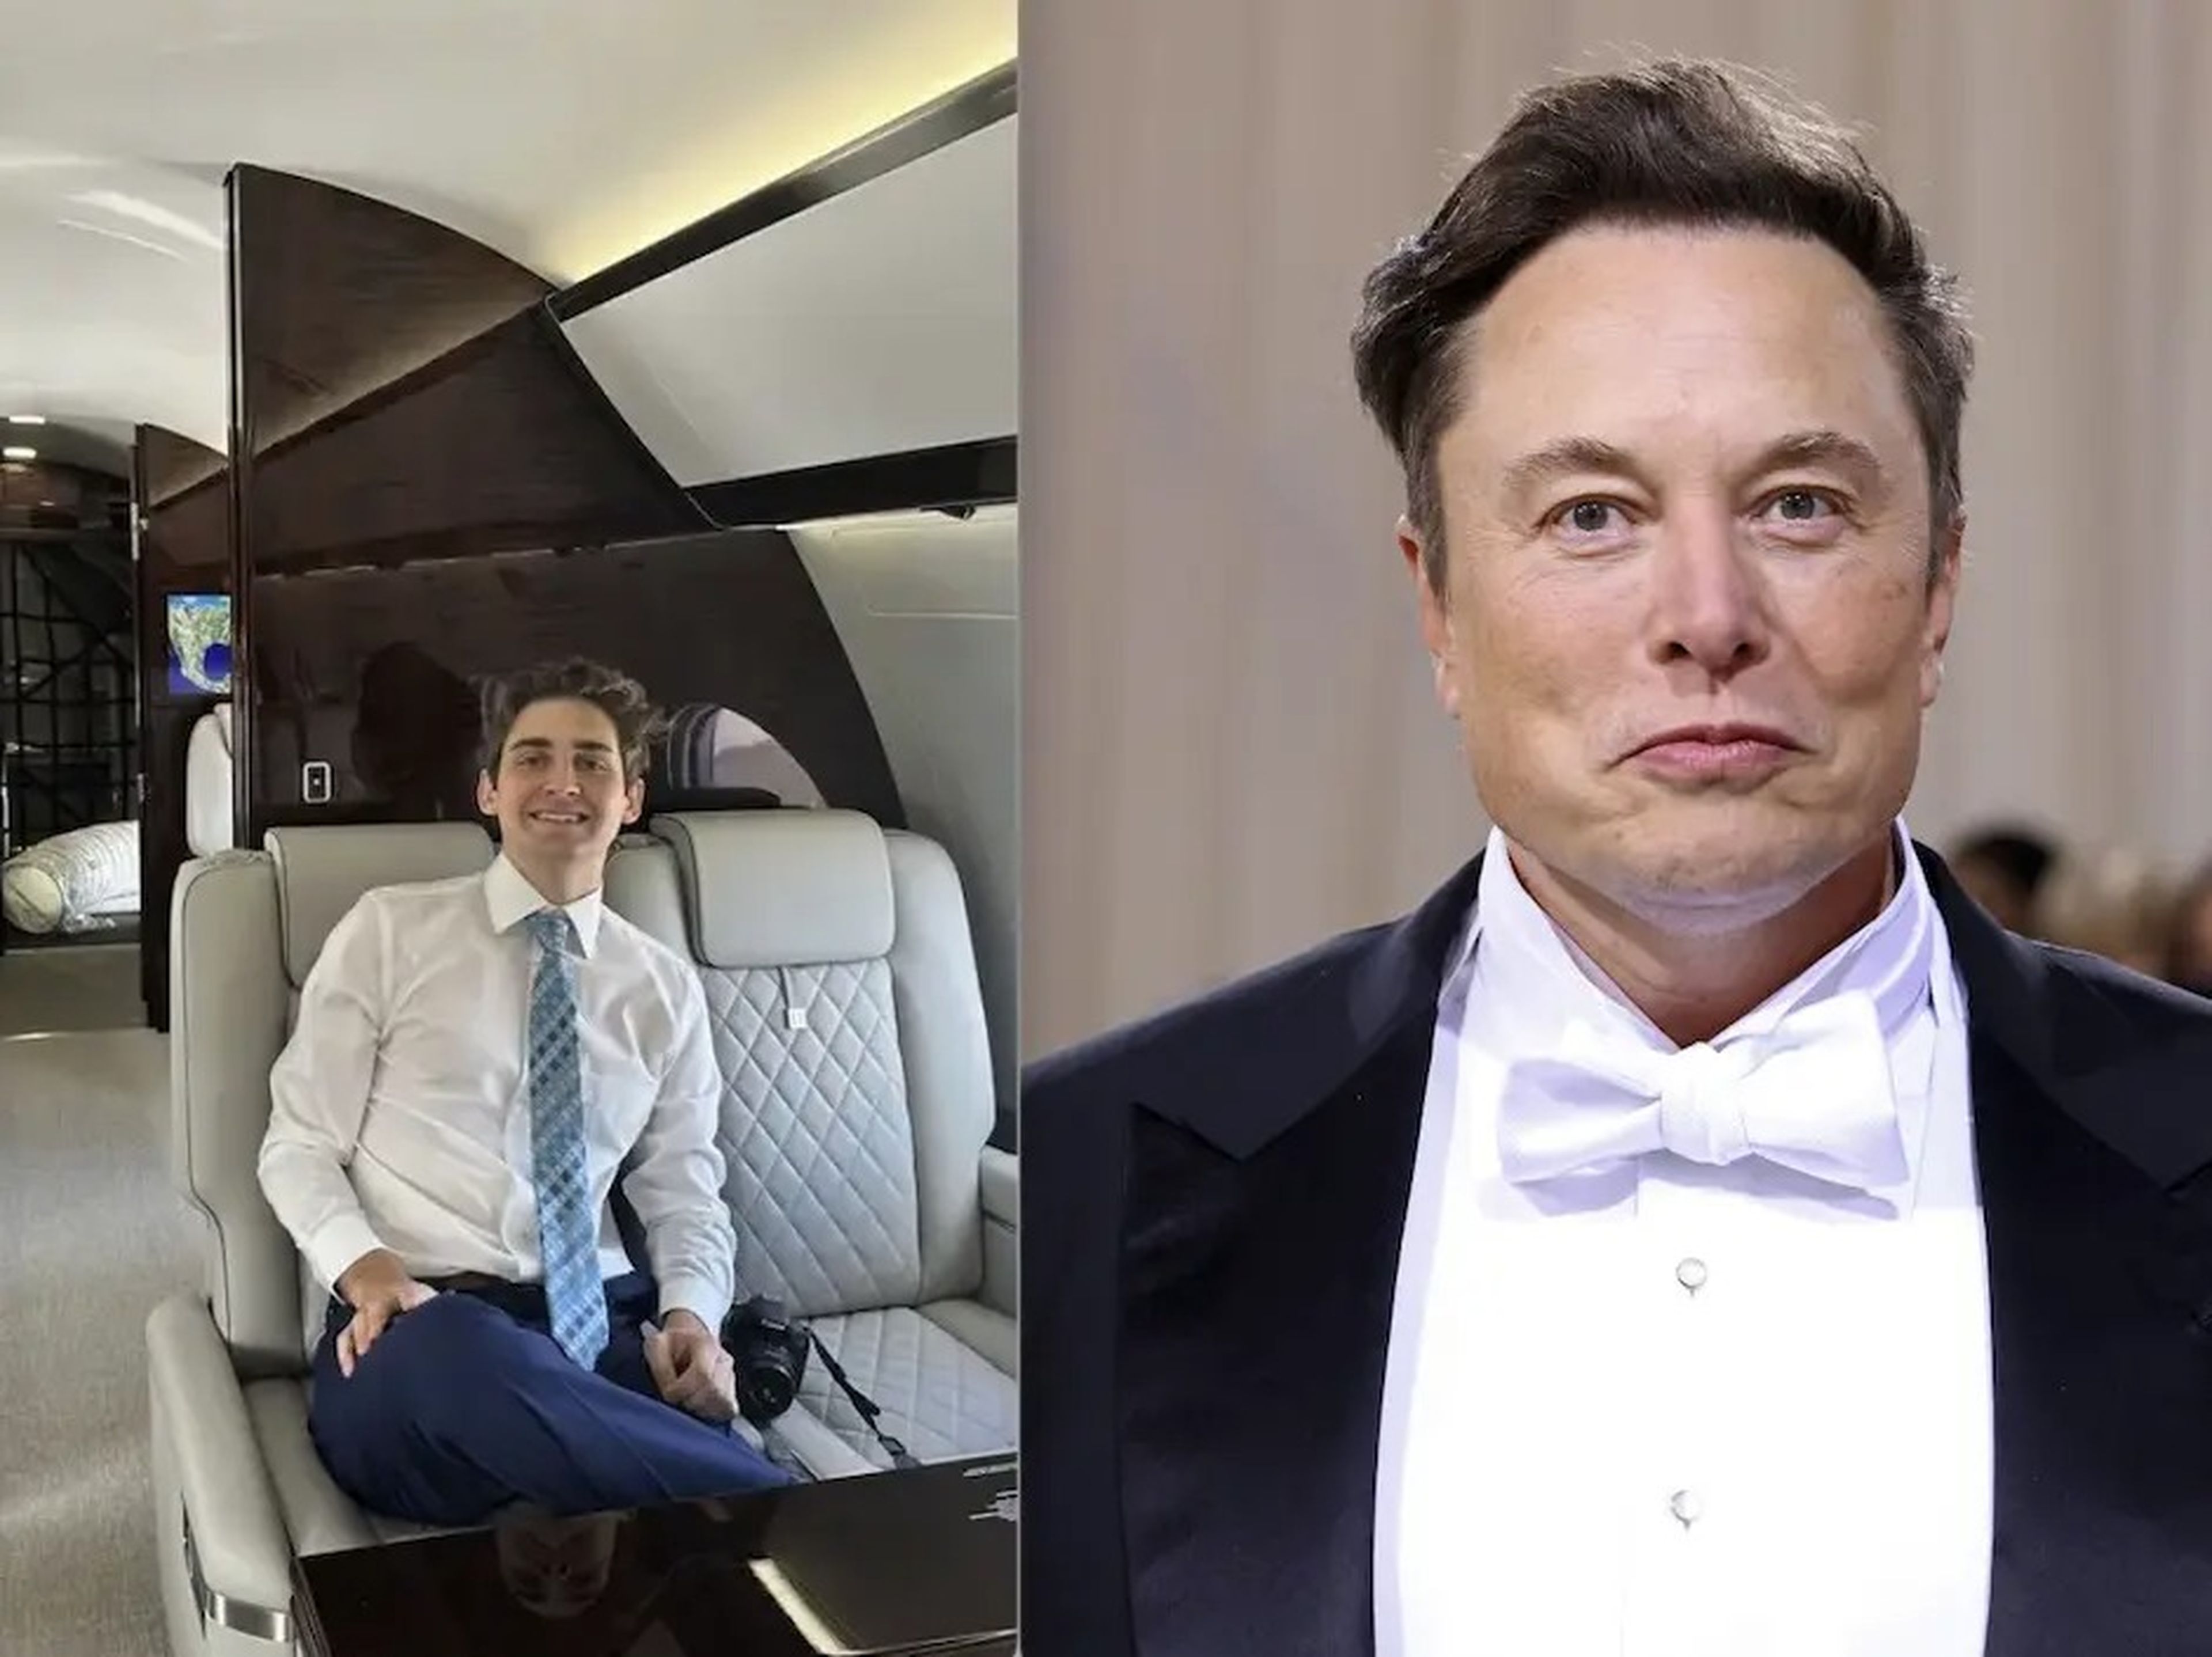 Jack Sweeney creó su primera cuenta de Twitter siguiendo el jet de Elon Musk en 2020.